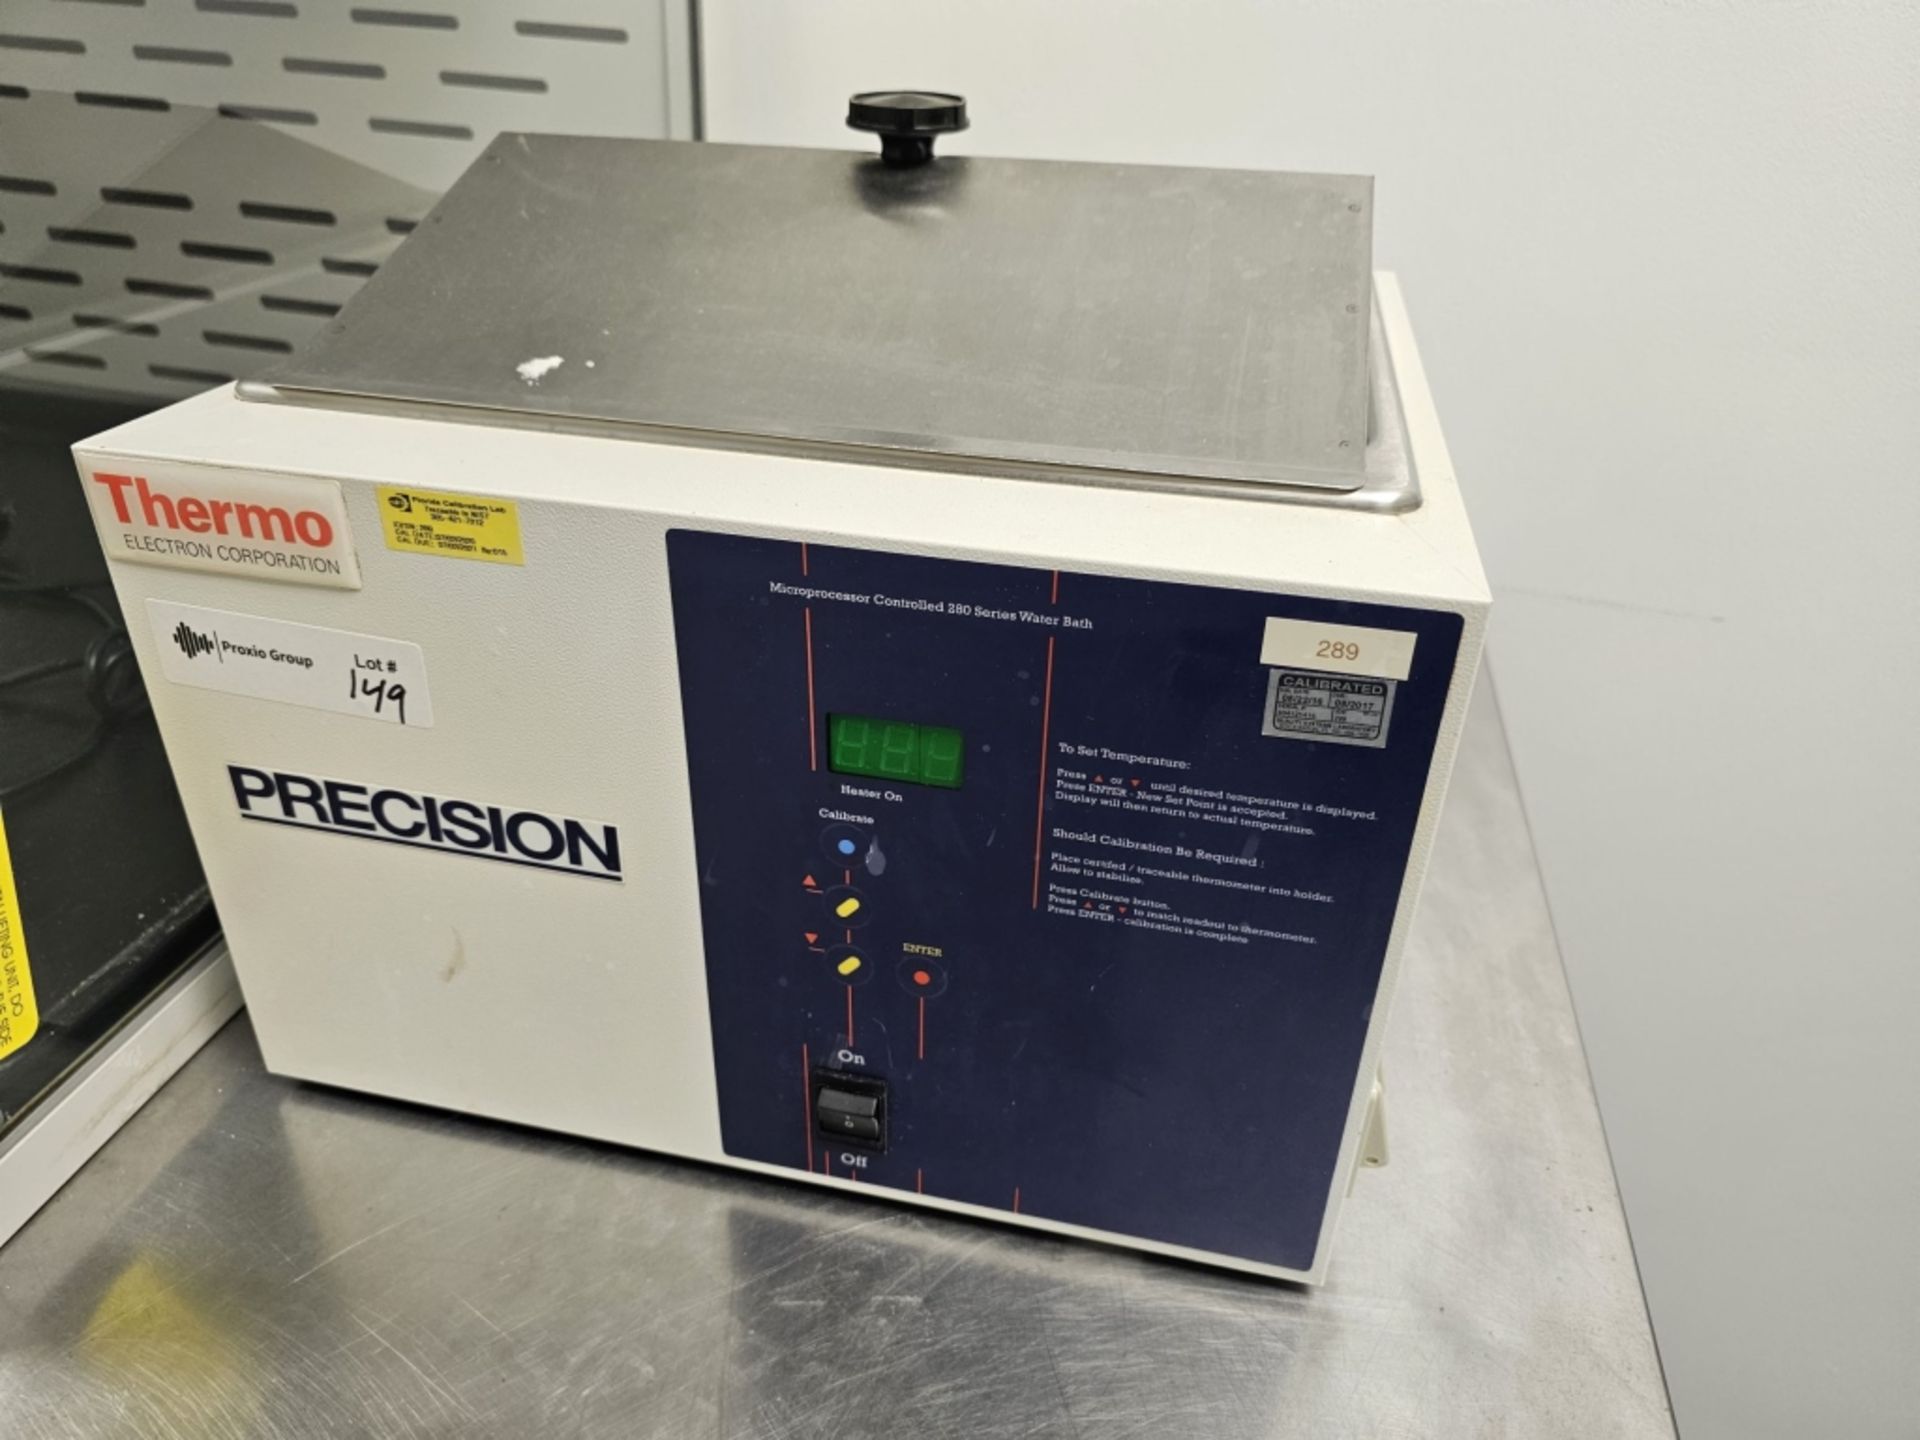 Thermo Scientific Precision microprocessor controlled 280 series water bath